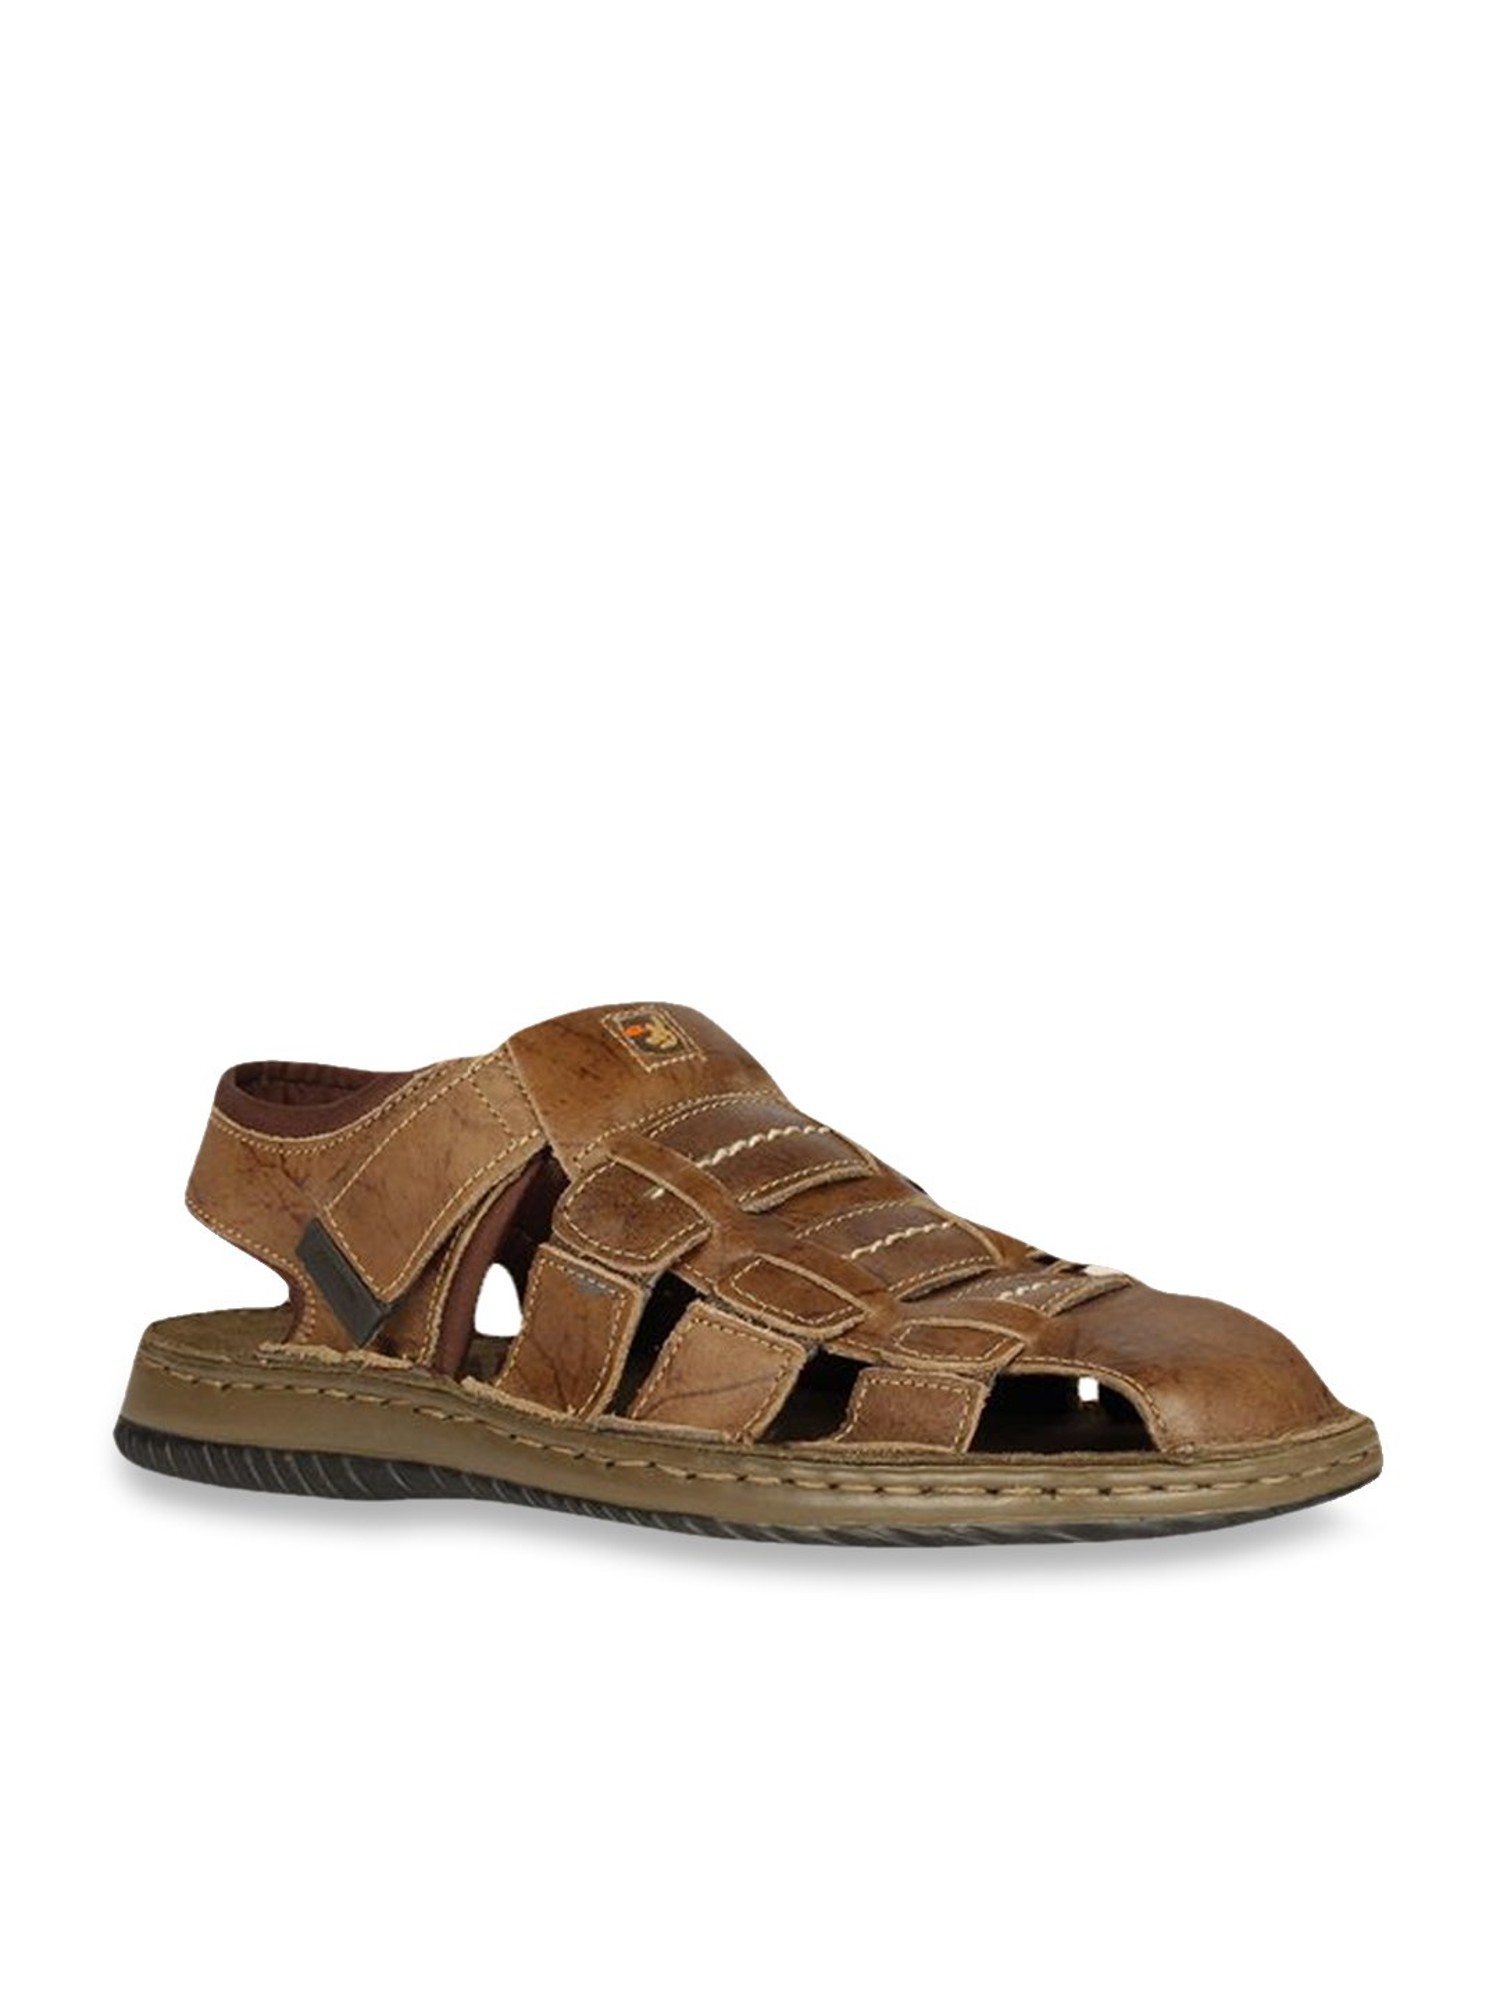 Woodland Mens Olive Green Leather Sandals GD2185116OLIVEGRN 11 UK   Amazonin Fashion